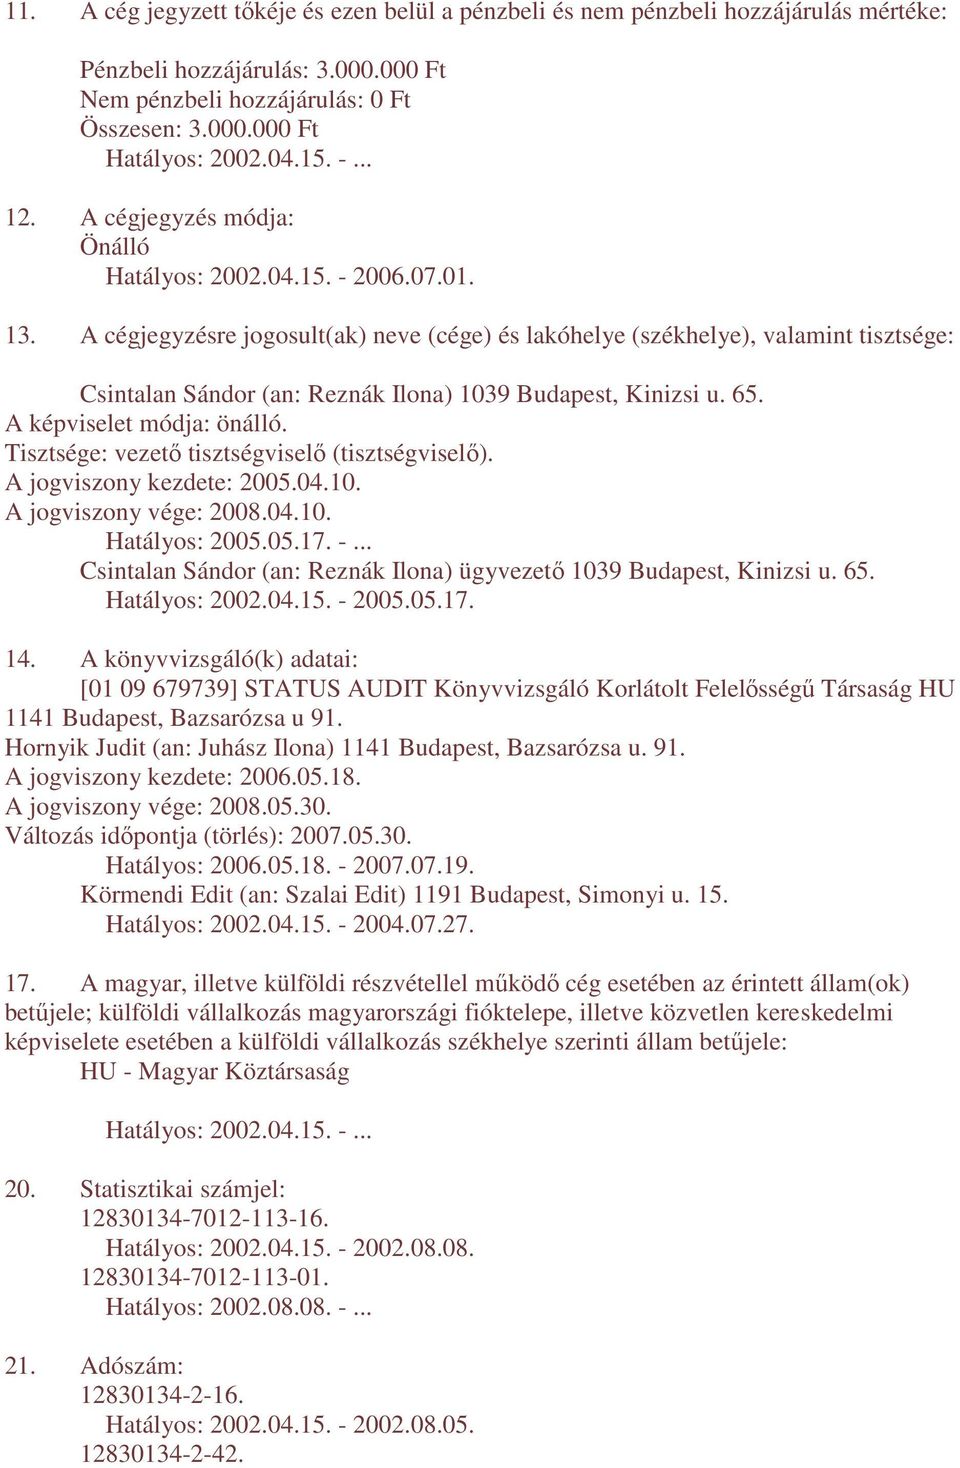 Tisztsége: vezetı tisztségviselı (tisztségviselı). A jogviszony kezdete: 2005.04.10. A jogviszony vége: 2008.04.10. Hatályos: 2005.05.17. -.